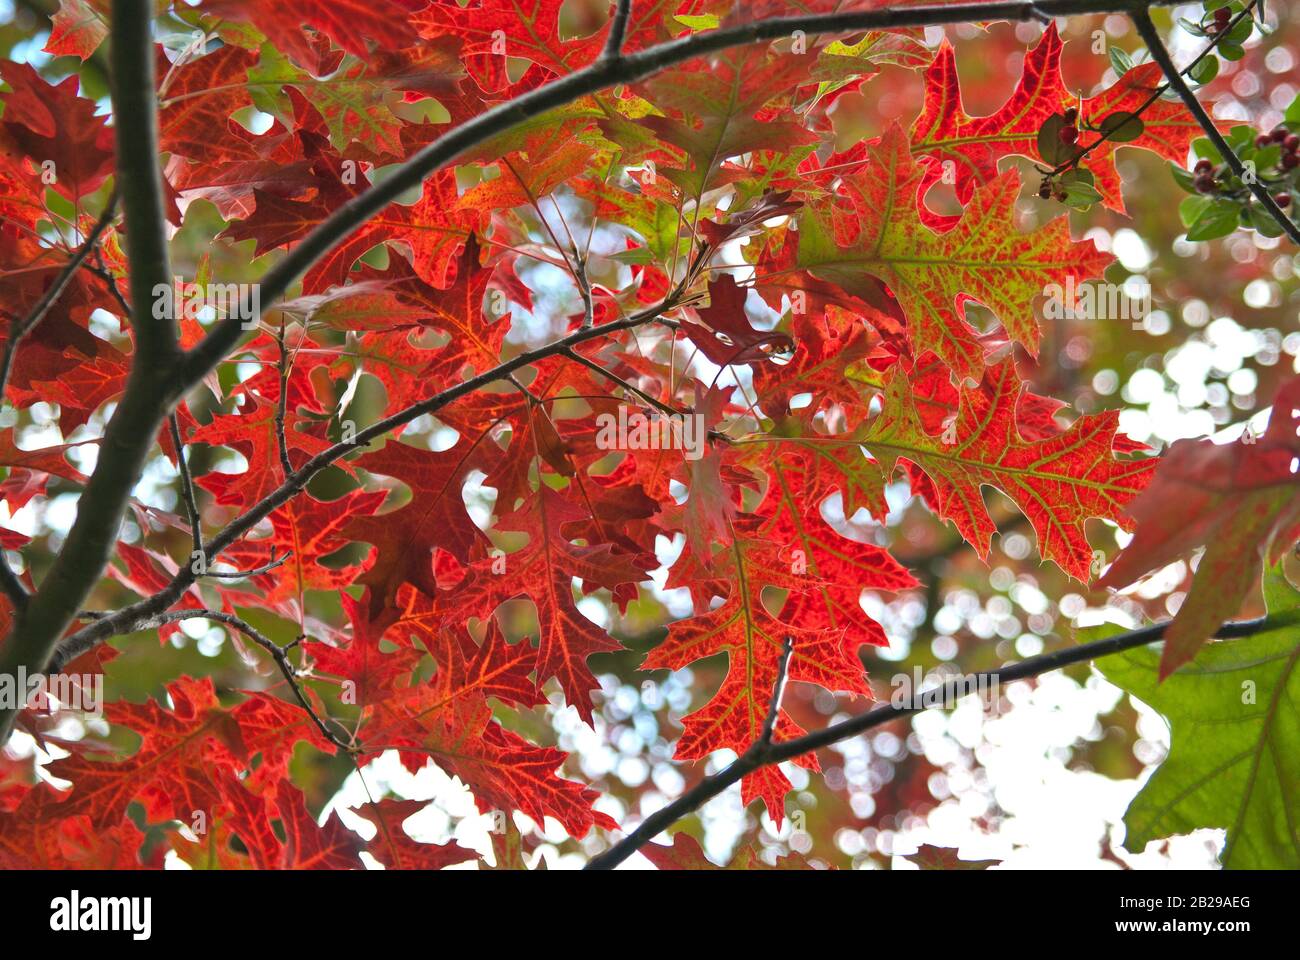 Scharlach-Eiche (Quercus coccinea) Stock Photo